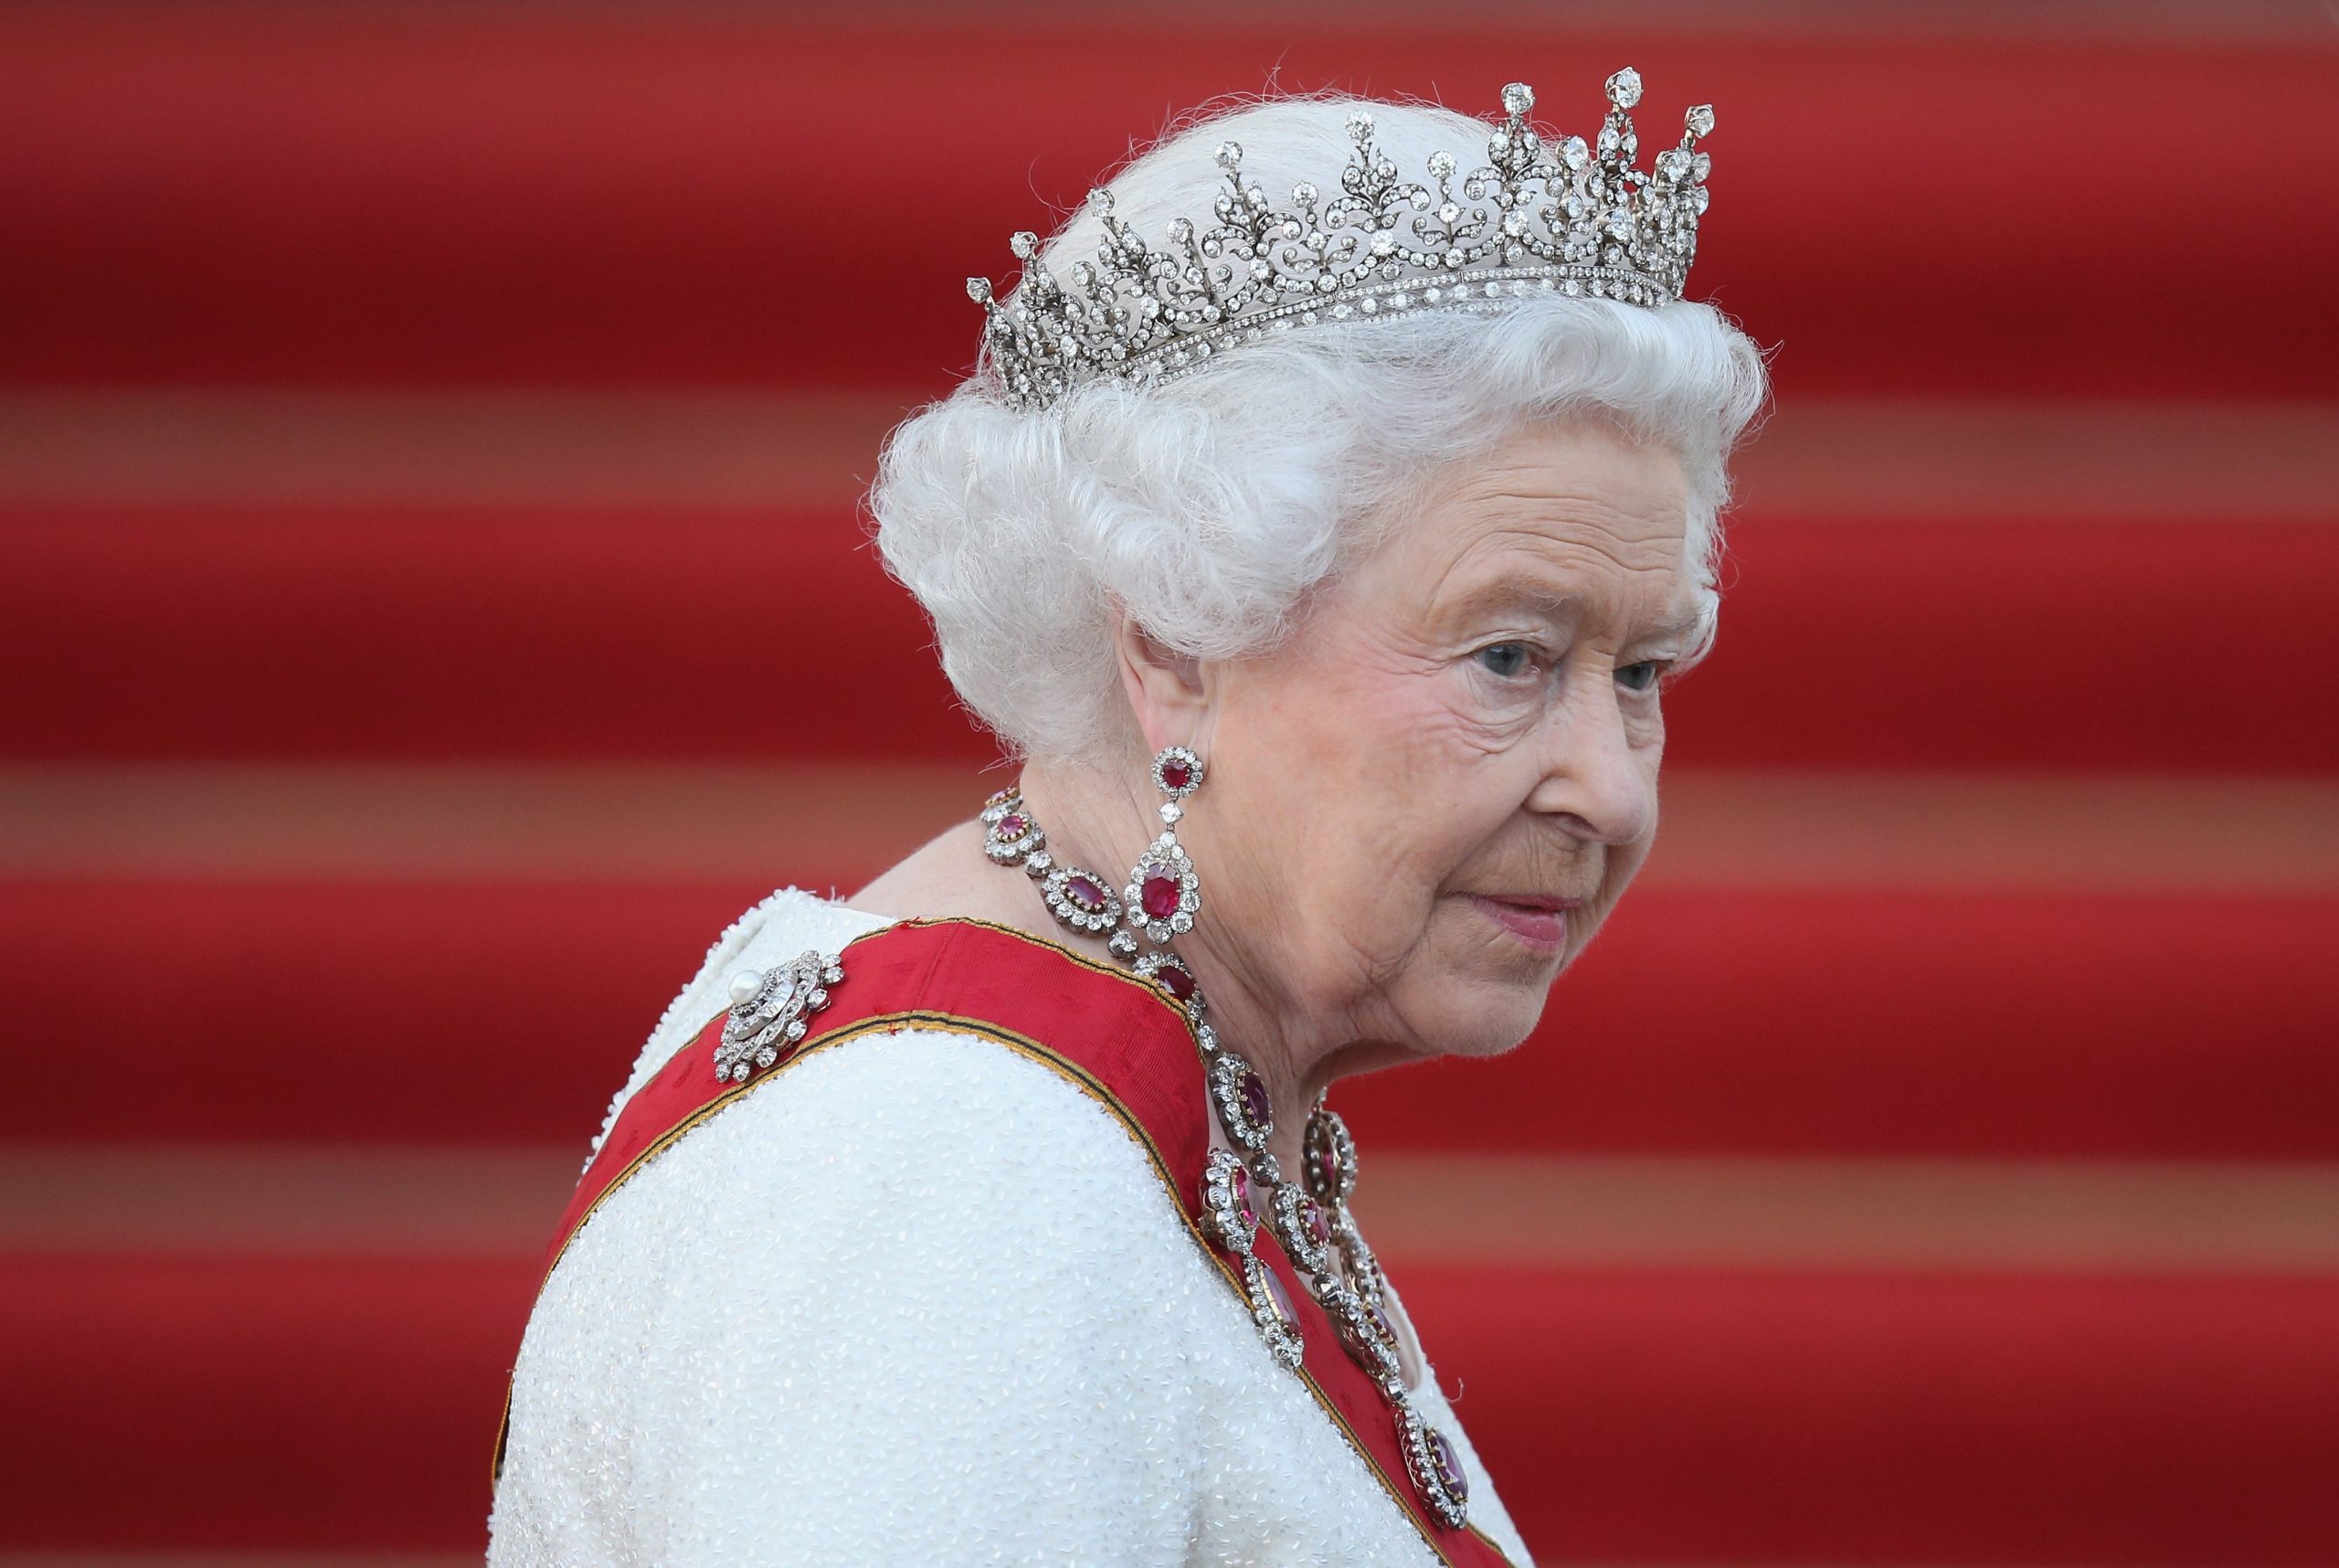 Անգլիայի թագուհին չի մասնակցի Զատիկի կիրակիի արարողությանը